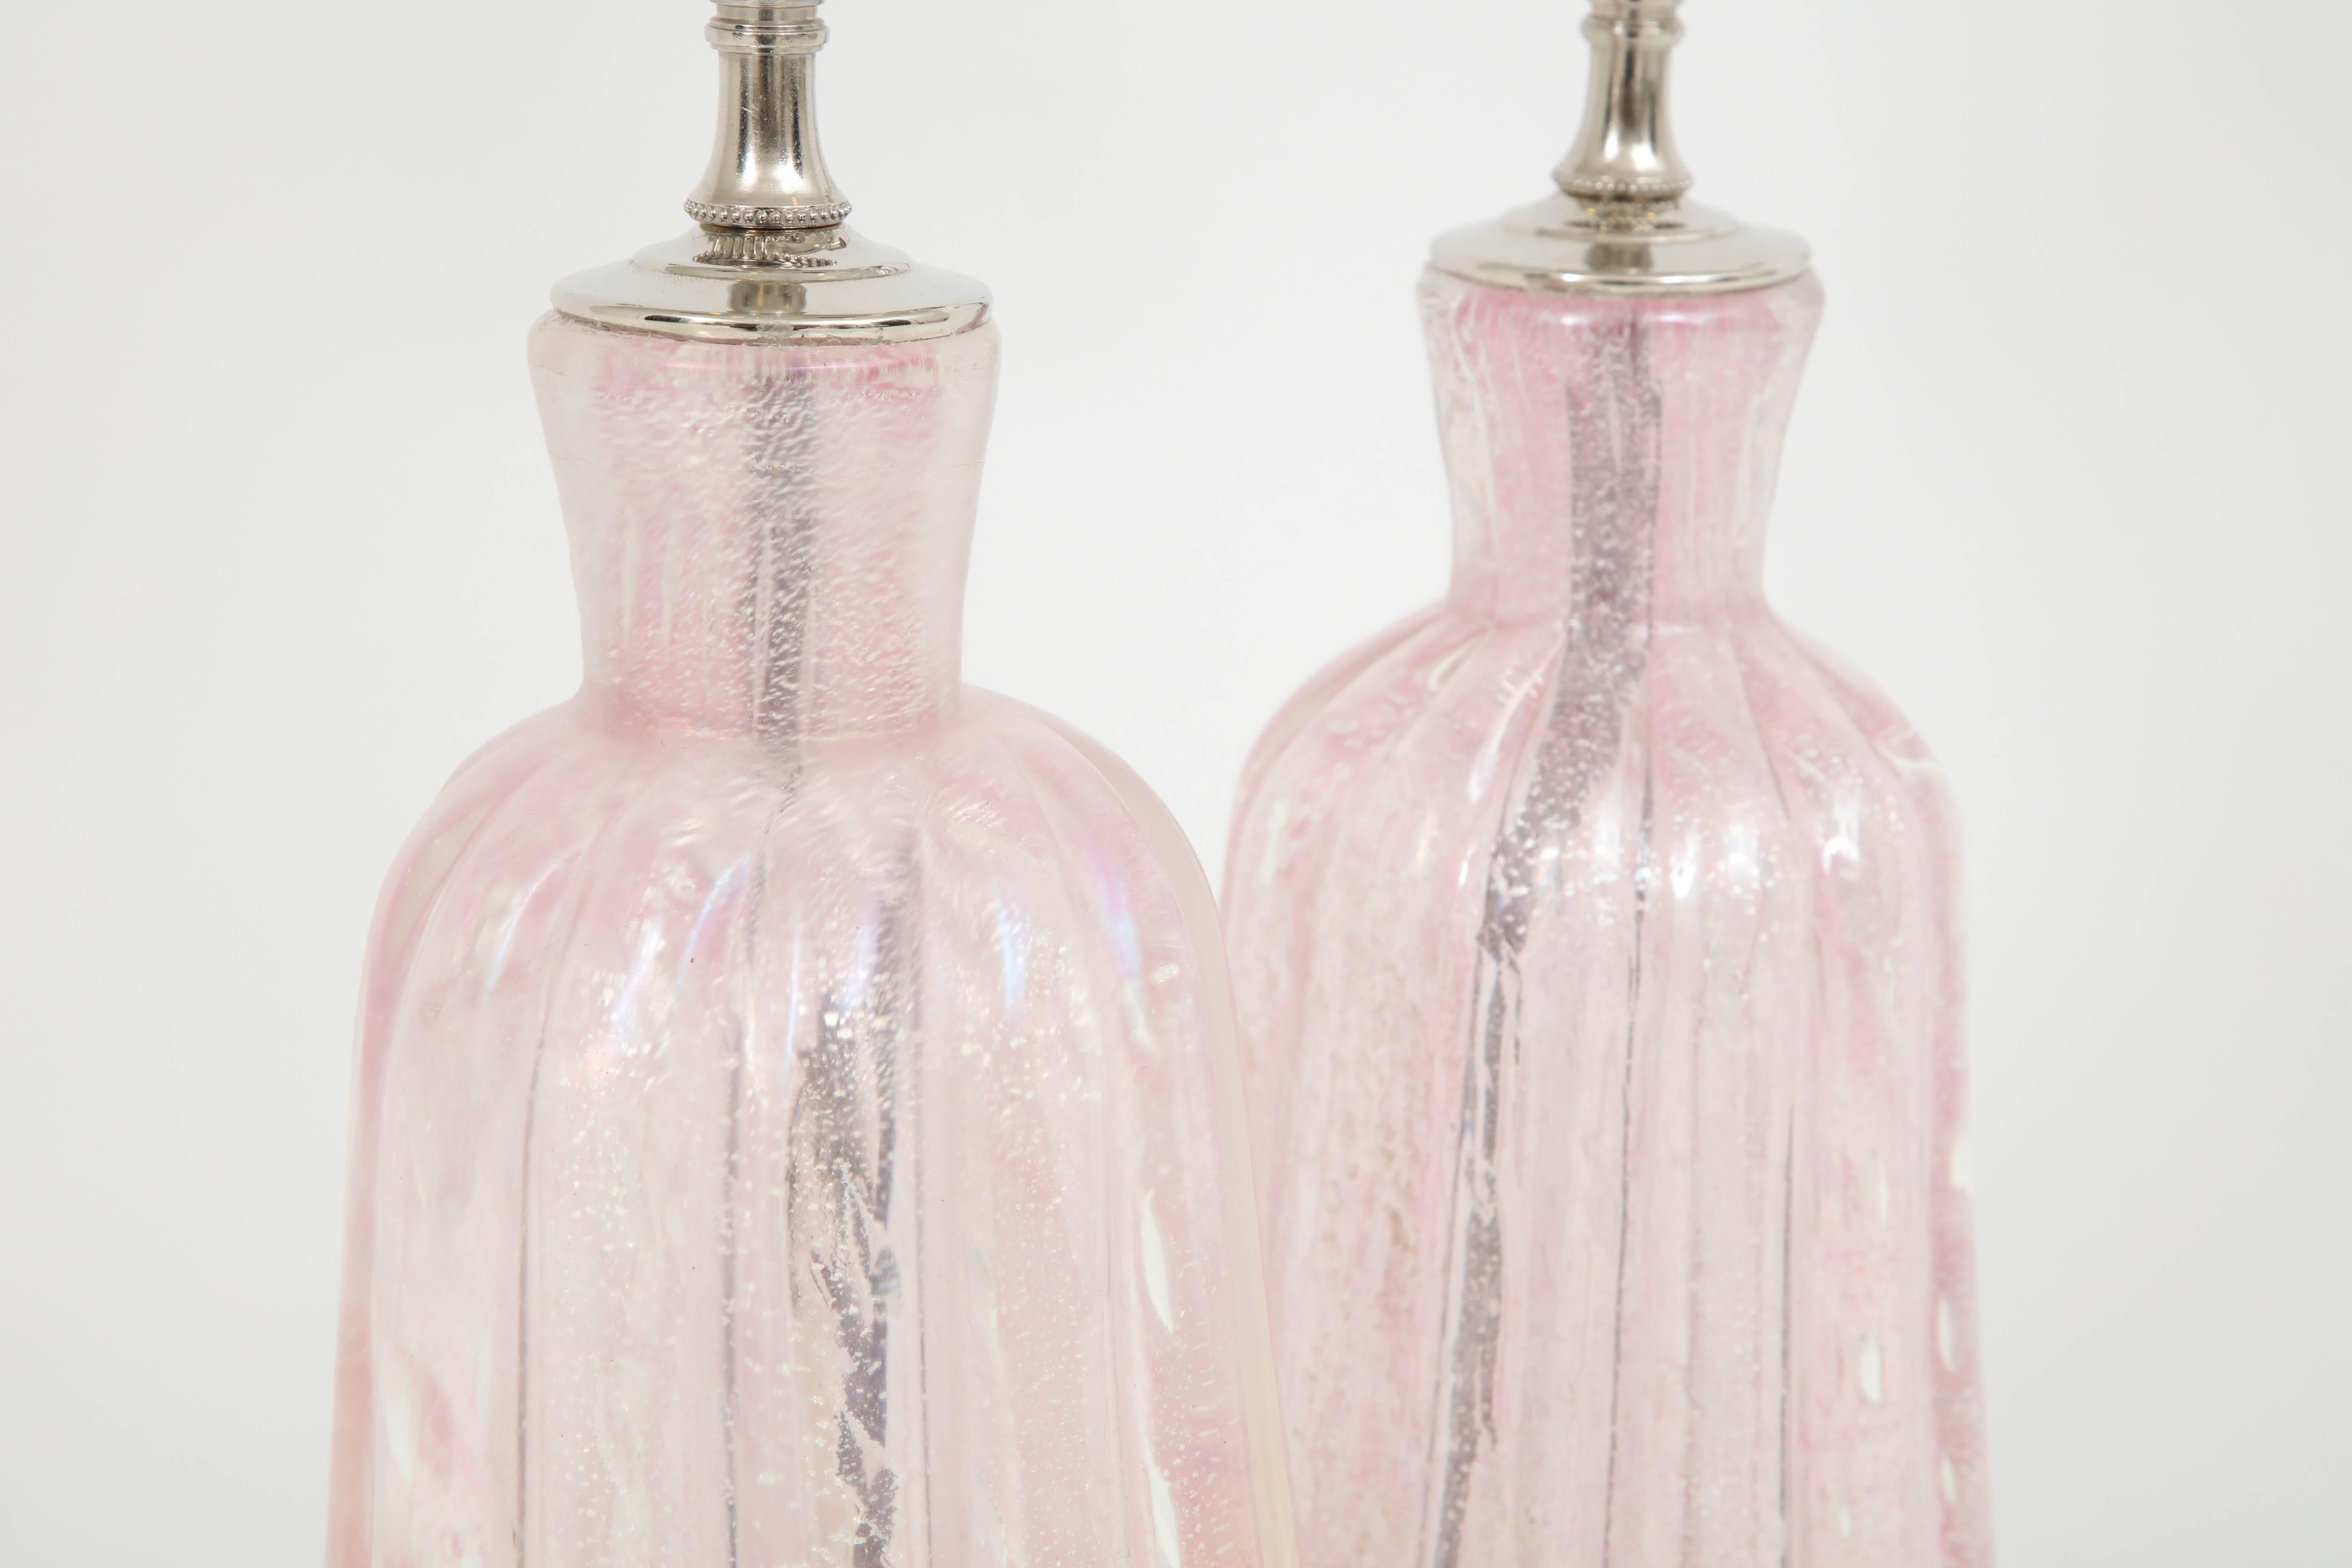 Pair of Pink Murano Lamps 1